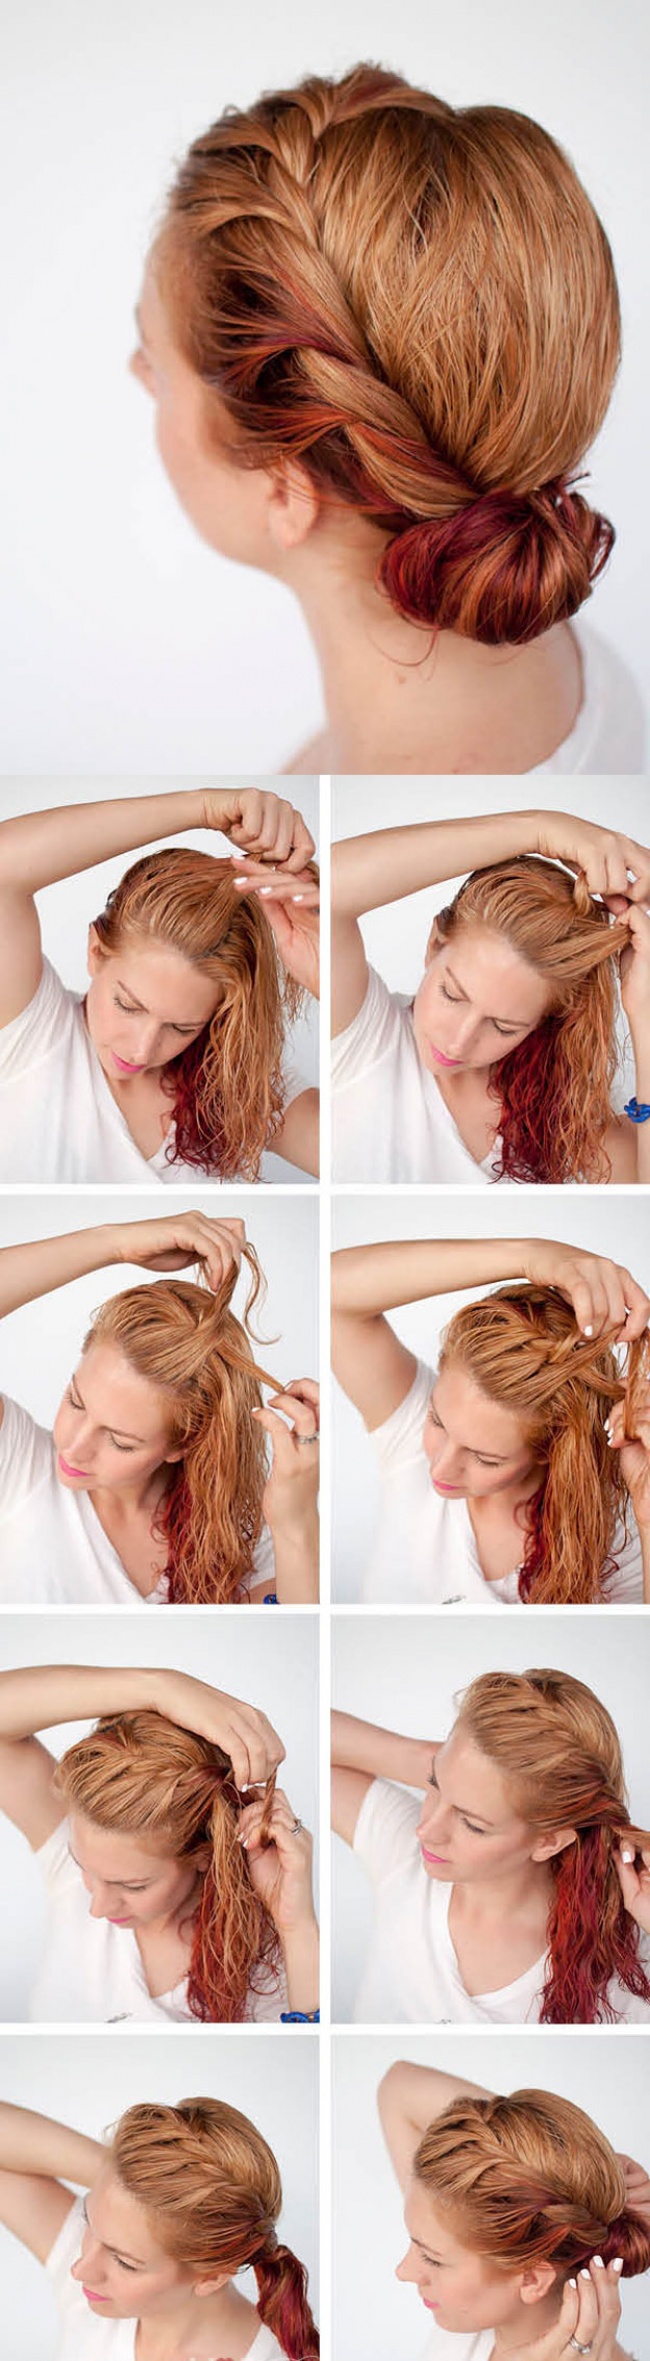 Deset jednostavnih frizura koje moÅ¾ete napraviti za samo 5 minuta!